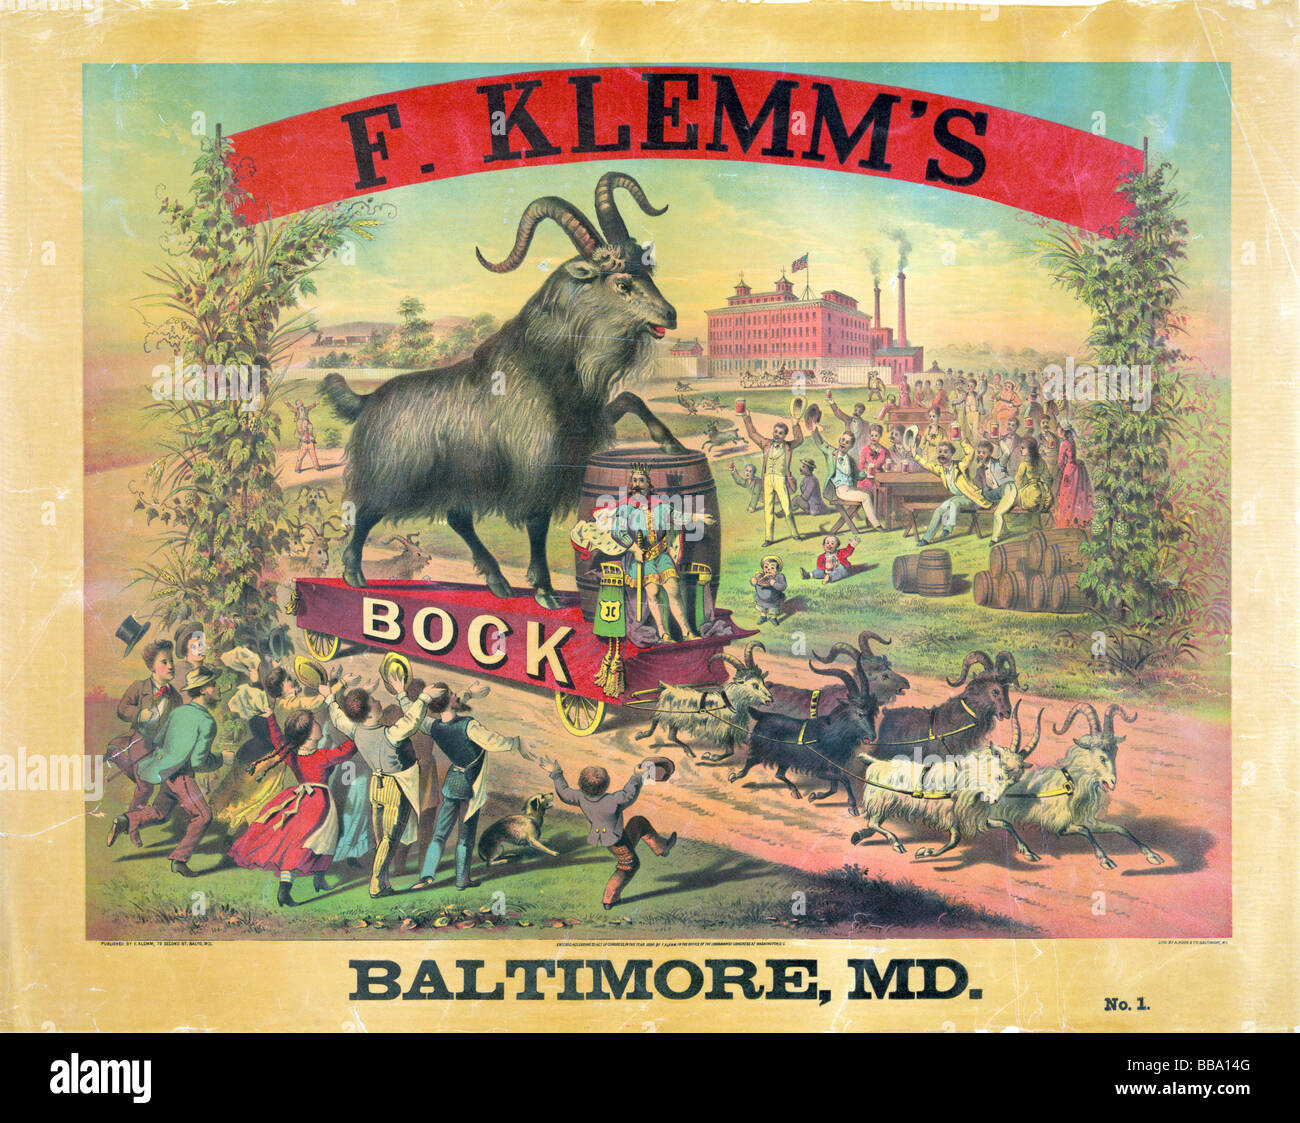 Ende des neunzehnten Jahrhunderts (um 1880) Lithographie Poster von Hoen & Co Werbung F Klemm Bockbier aus Baltimore, Maryland. Stockfoto